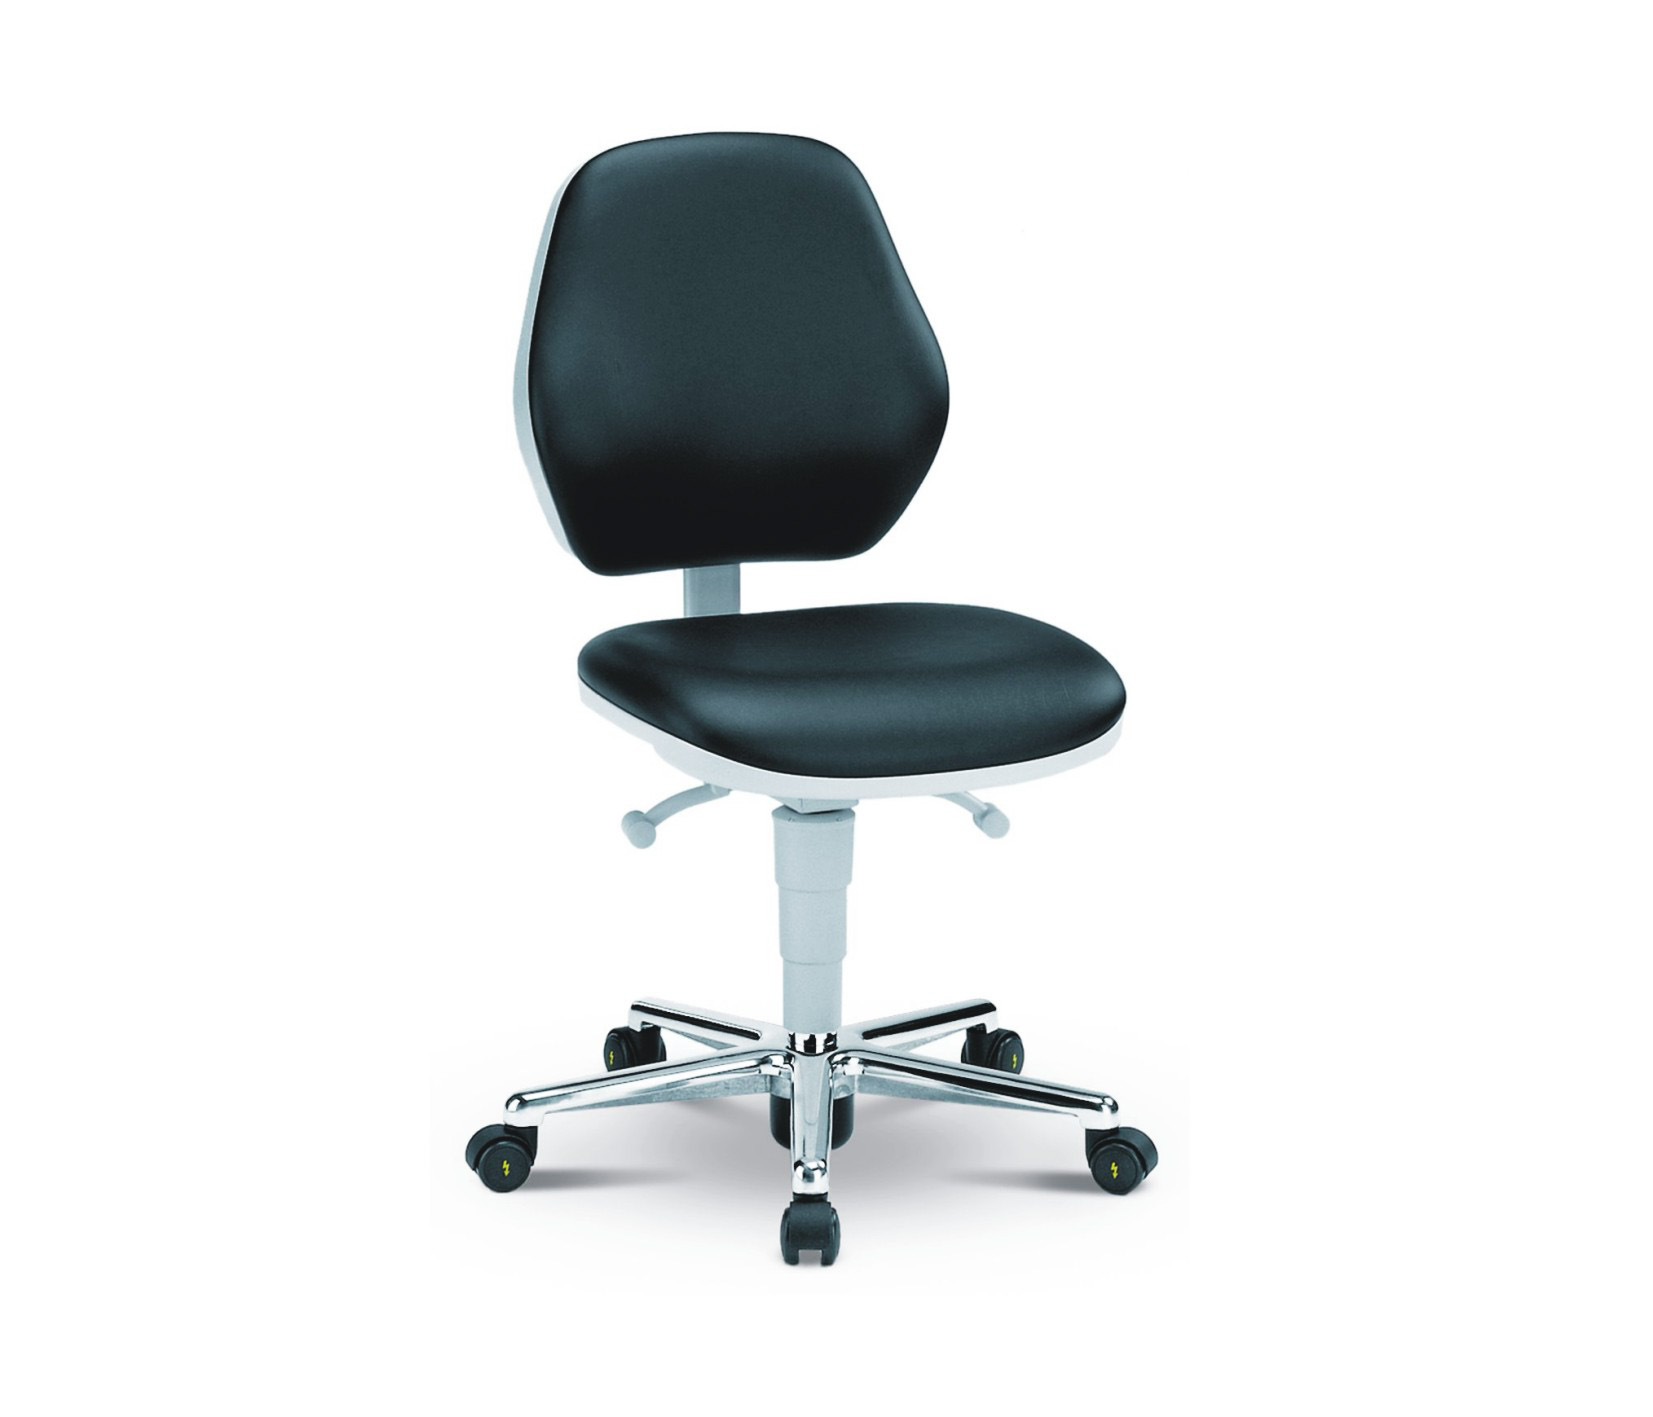 Chaise de salle blanche Basic avec roulettes, dossier bas, classe de salle blanche ISO 3